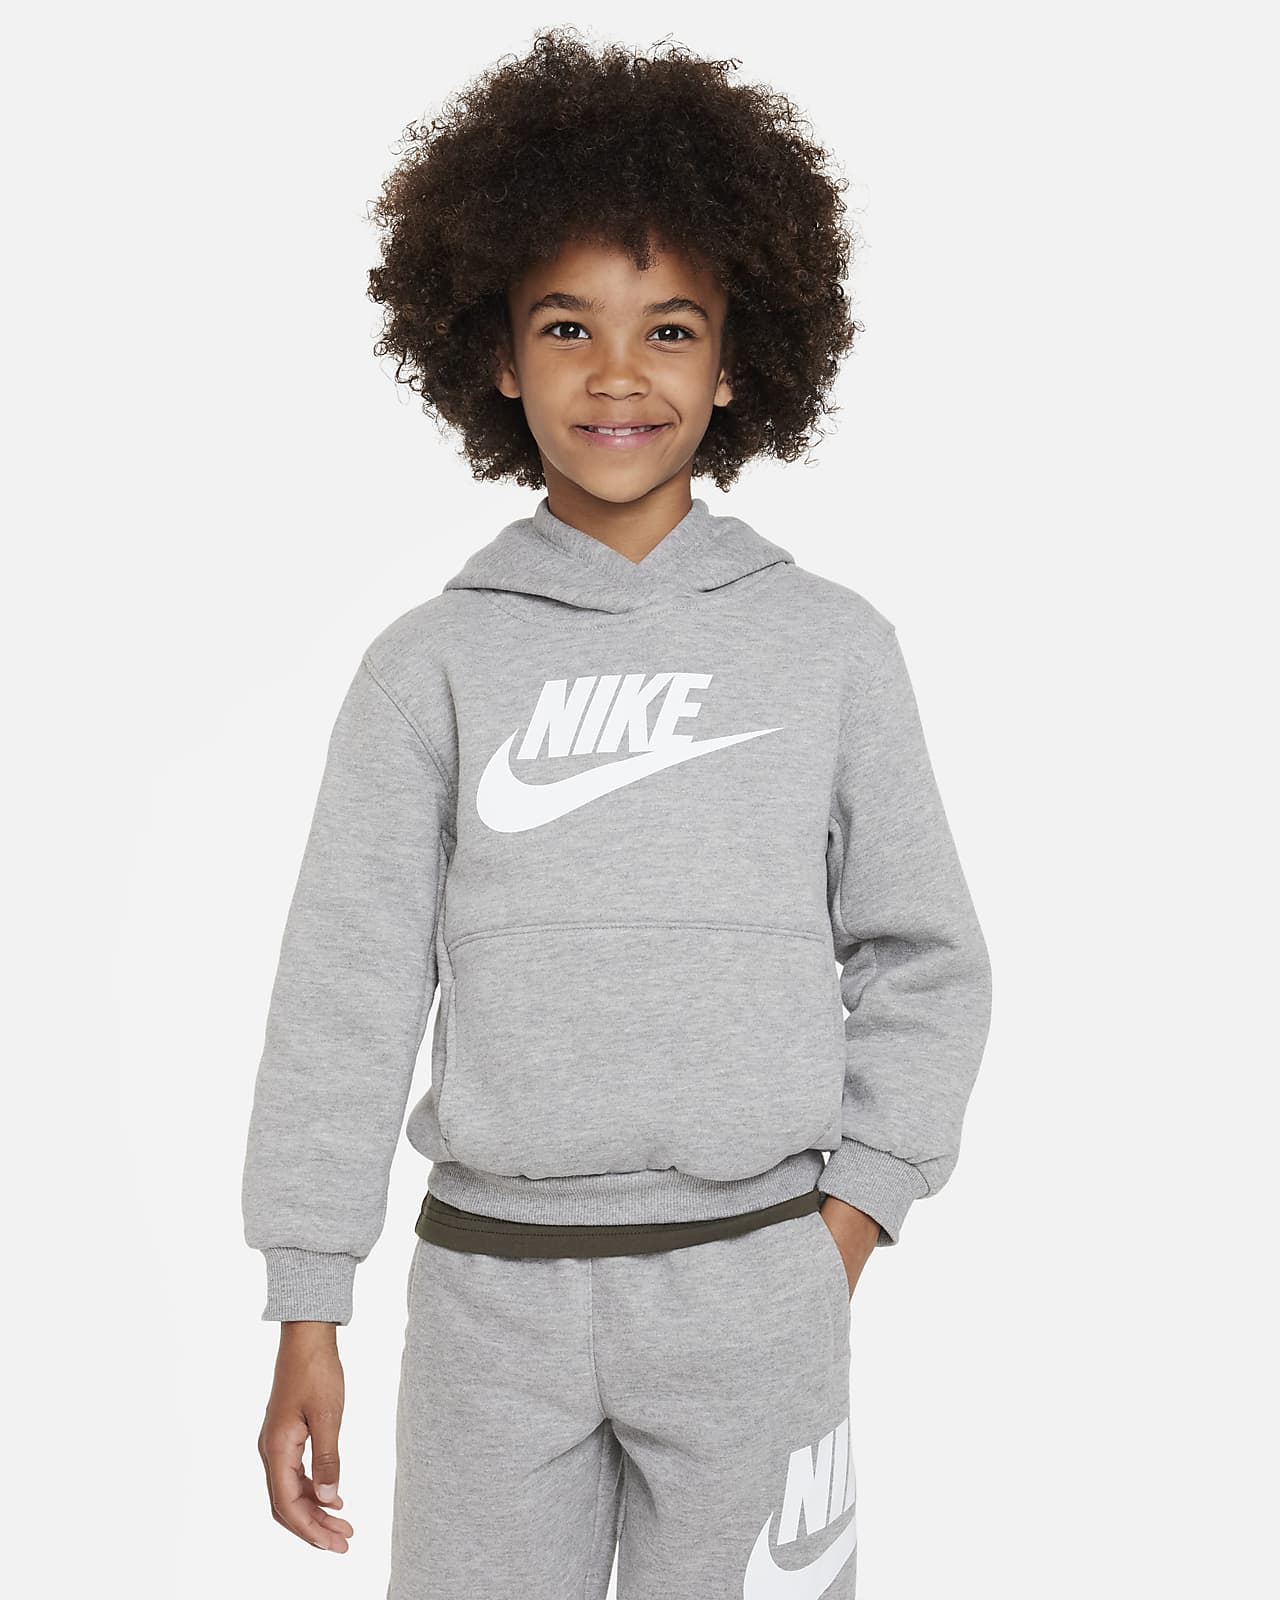 Pullover Fleece Kids Hoodie. Little Nike Club Sportswear